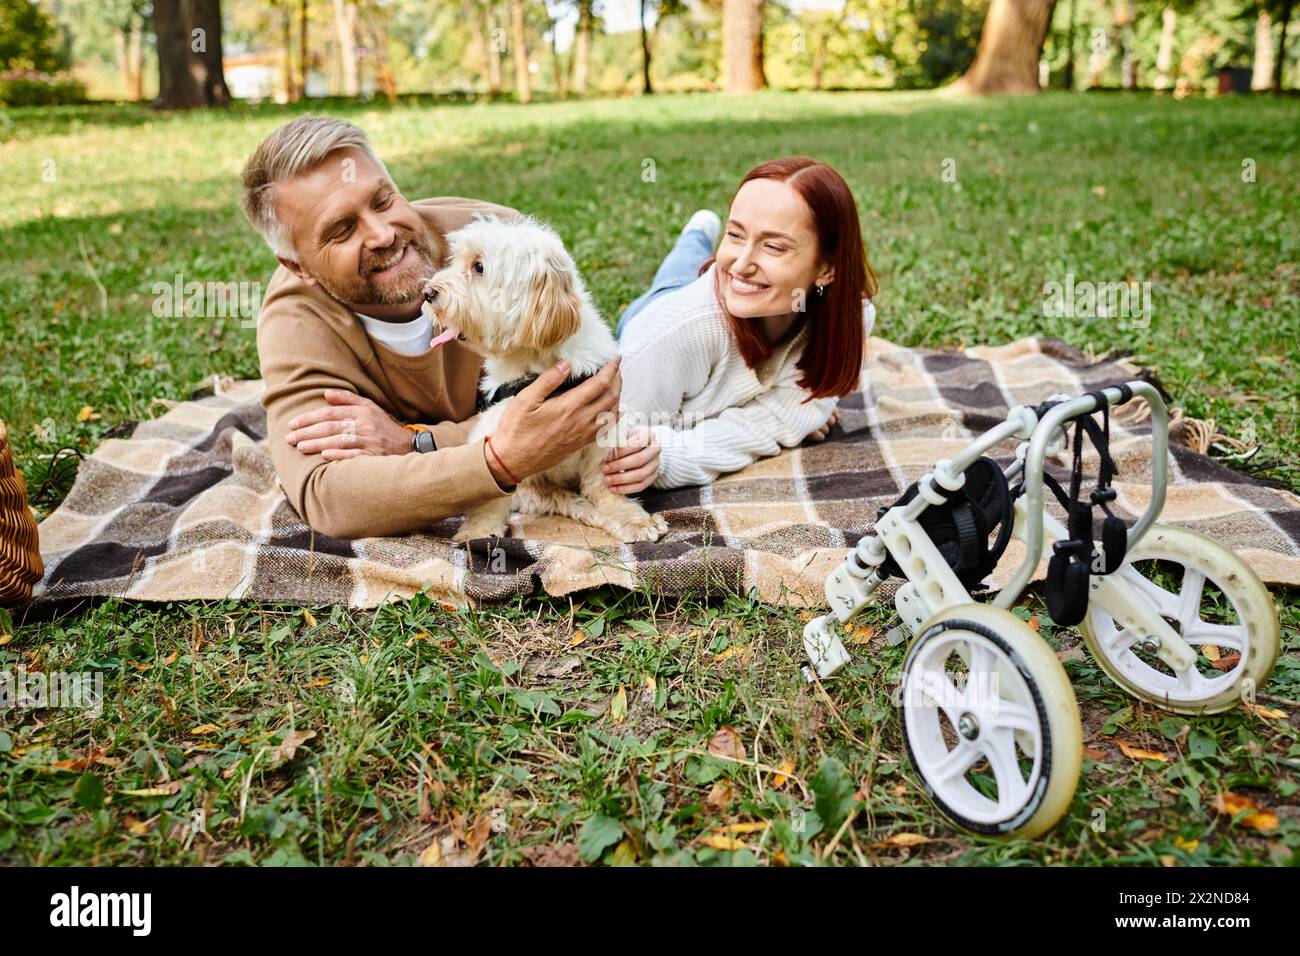 Ein Mann und eine Frau in lässiger Kleidung liegen mit ihrem Hund auf einer gemütlichen Decke im Park. Stockfoto